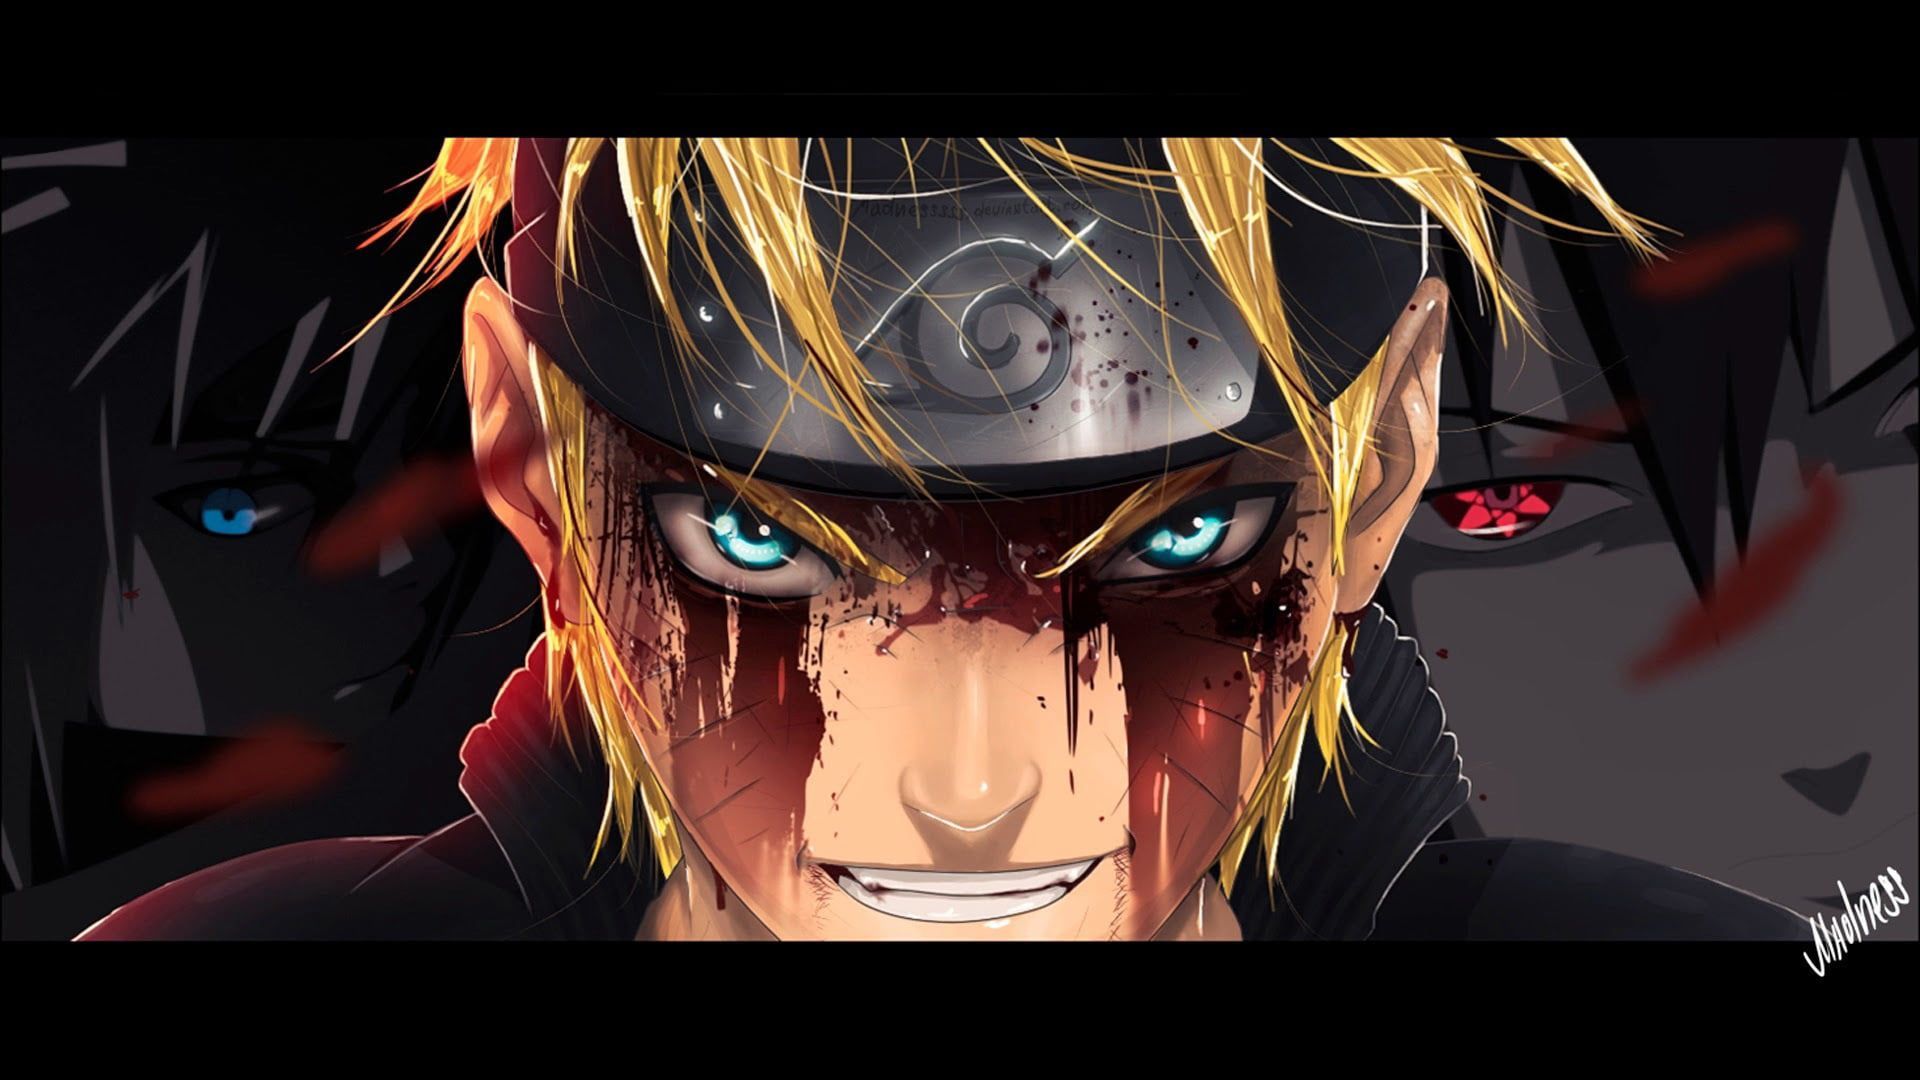 HD wallpaper: Naruto (anime), Uzumaki Naruto, blue eyes, Konoha, angry, blood 4K of Wallpaper for Andriod